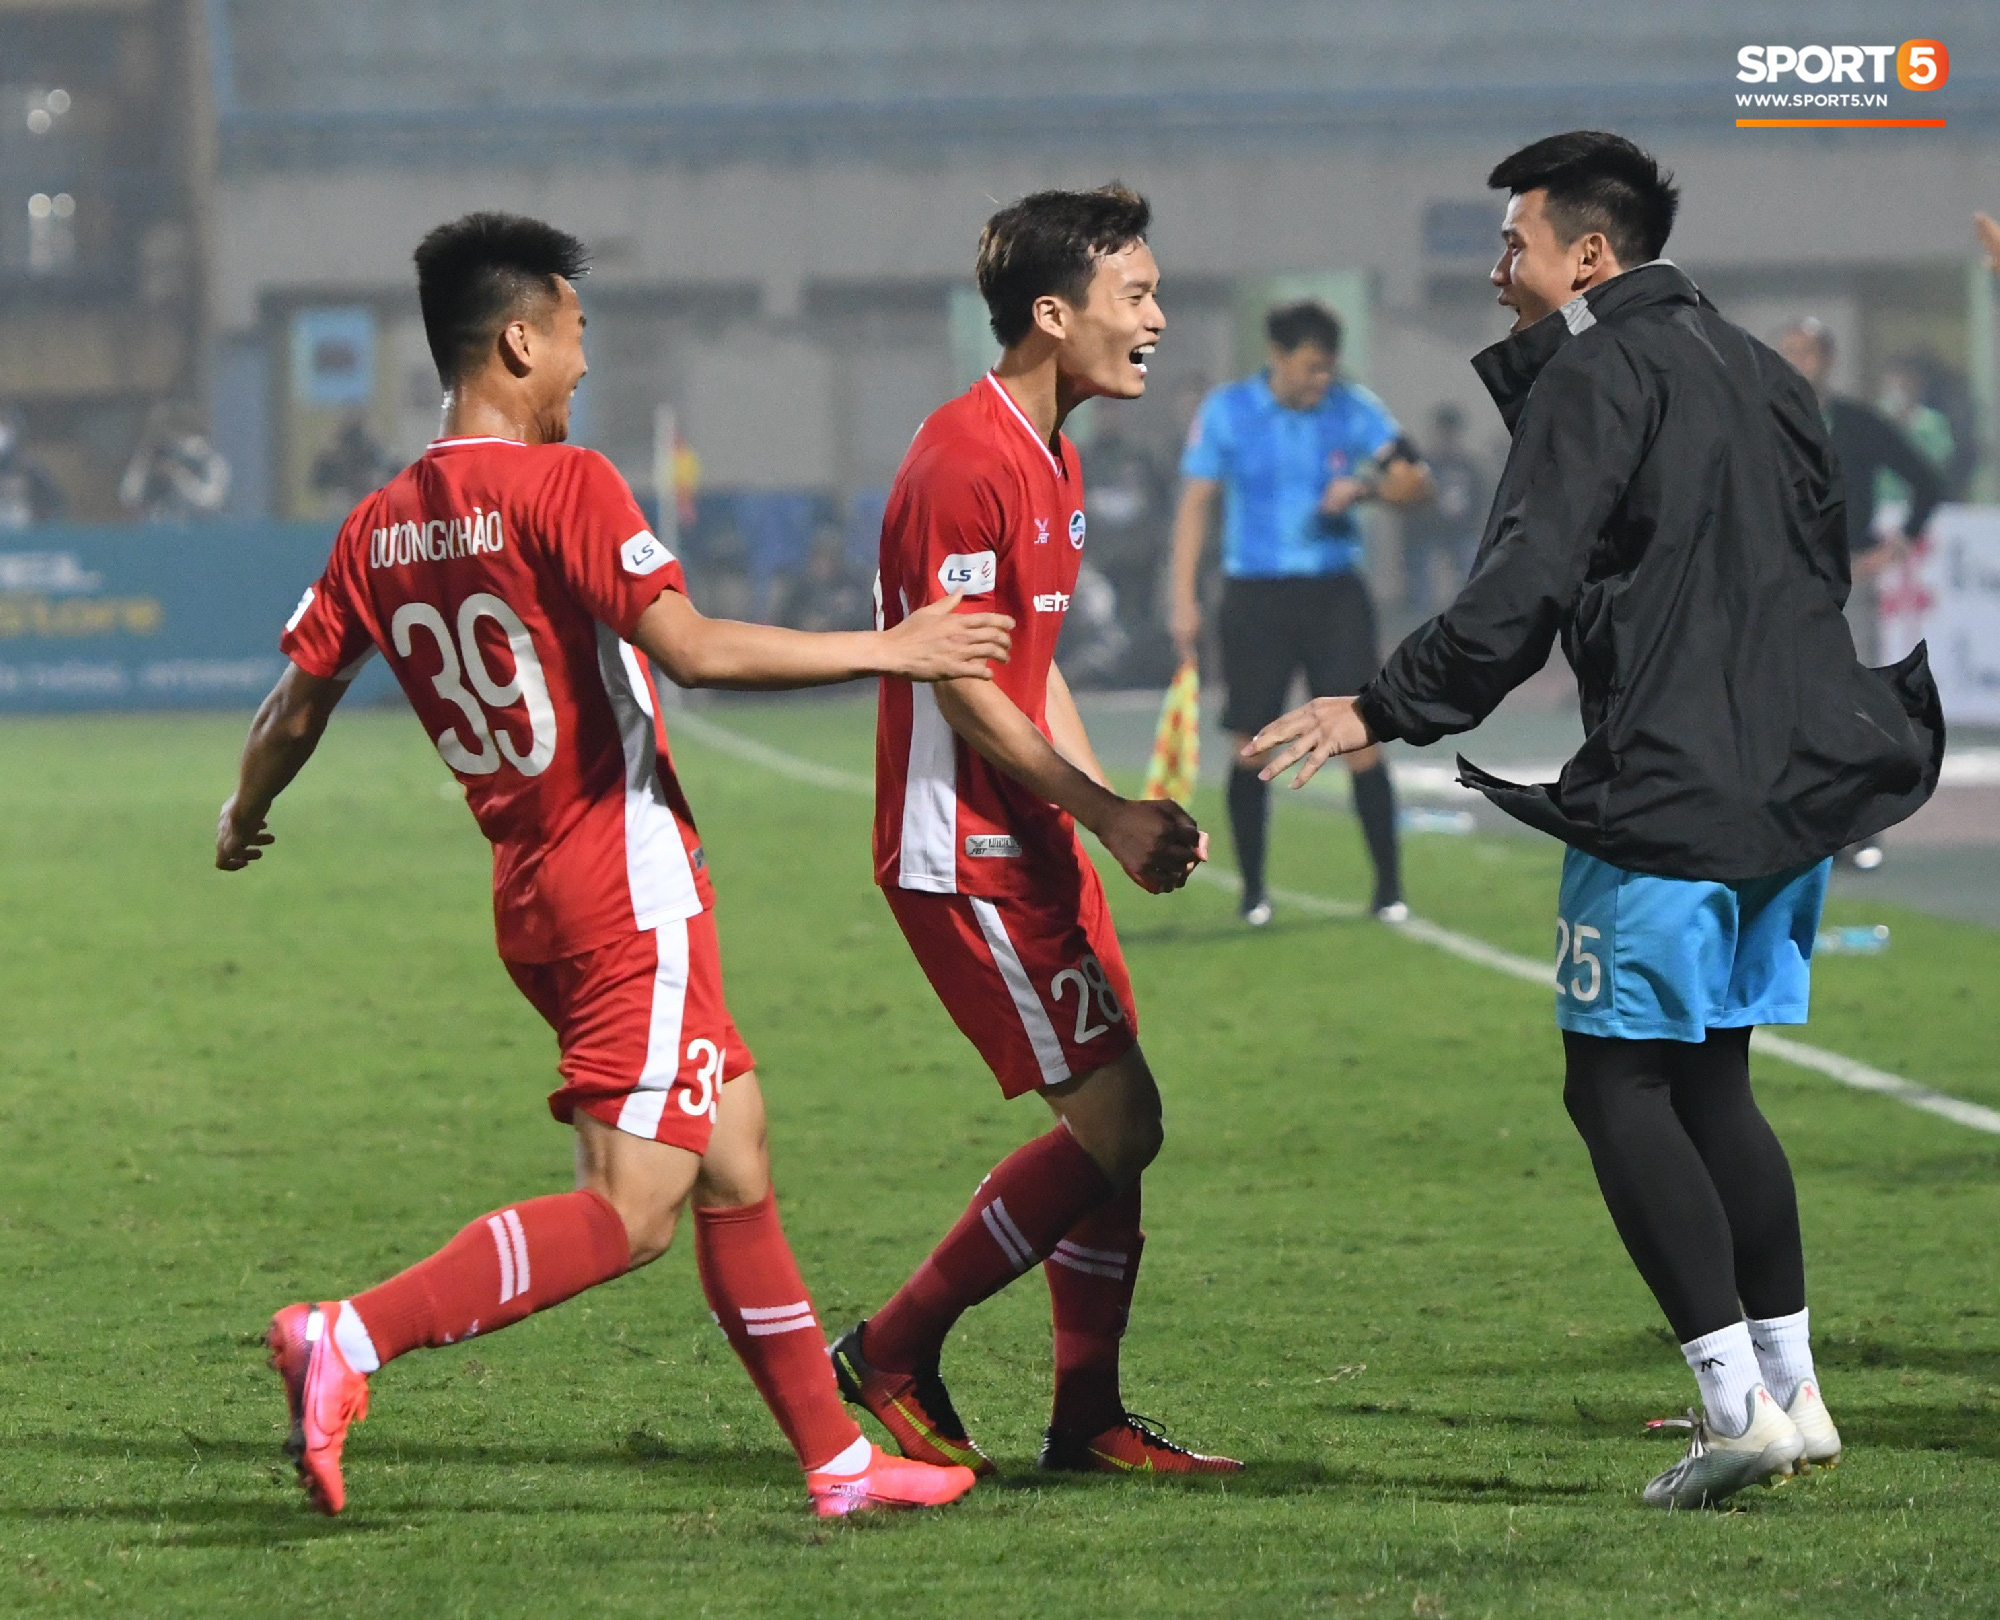 Cựu tuyển thủ U20 hồi sinh thần kỳ 2 năm sau chấn thương kinh hoàng nhất nhì bóng đá Việt, ghi điểm mạnh với trợ lý Lee Young-jin   - Ảnh 7.